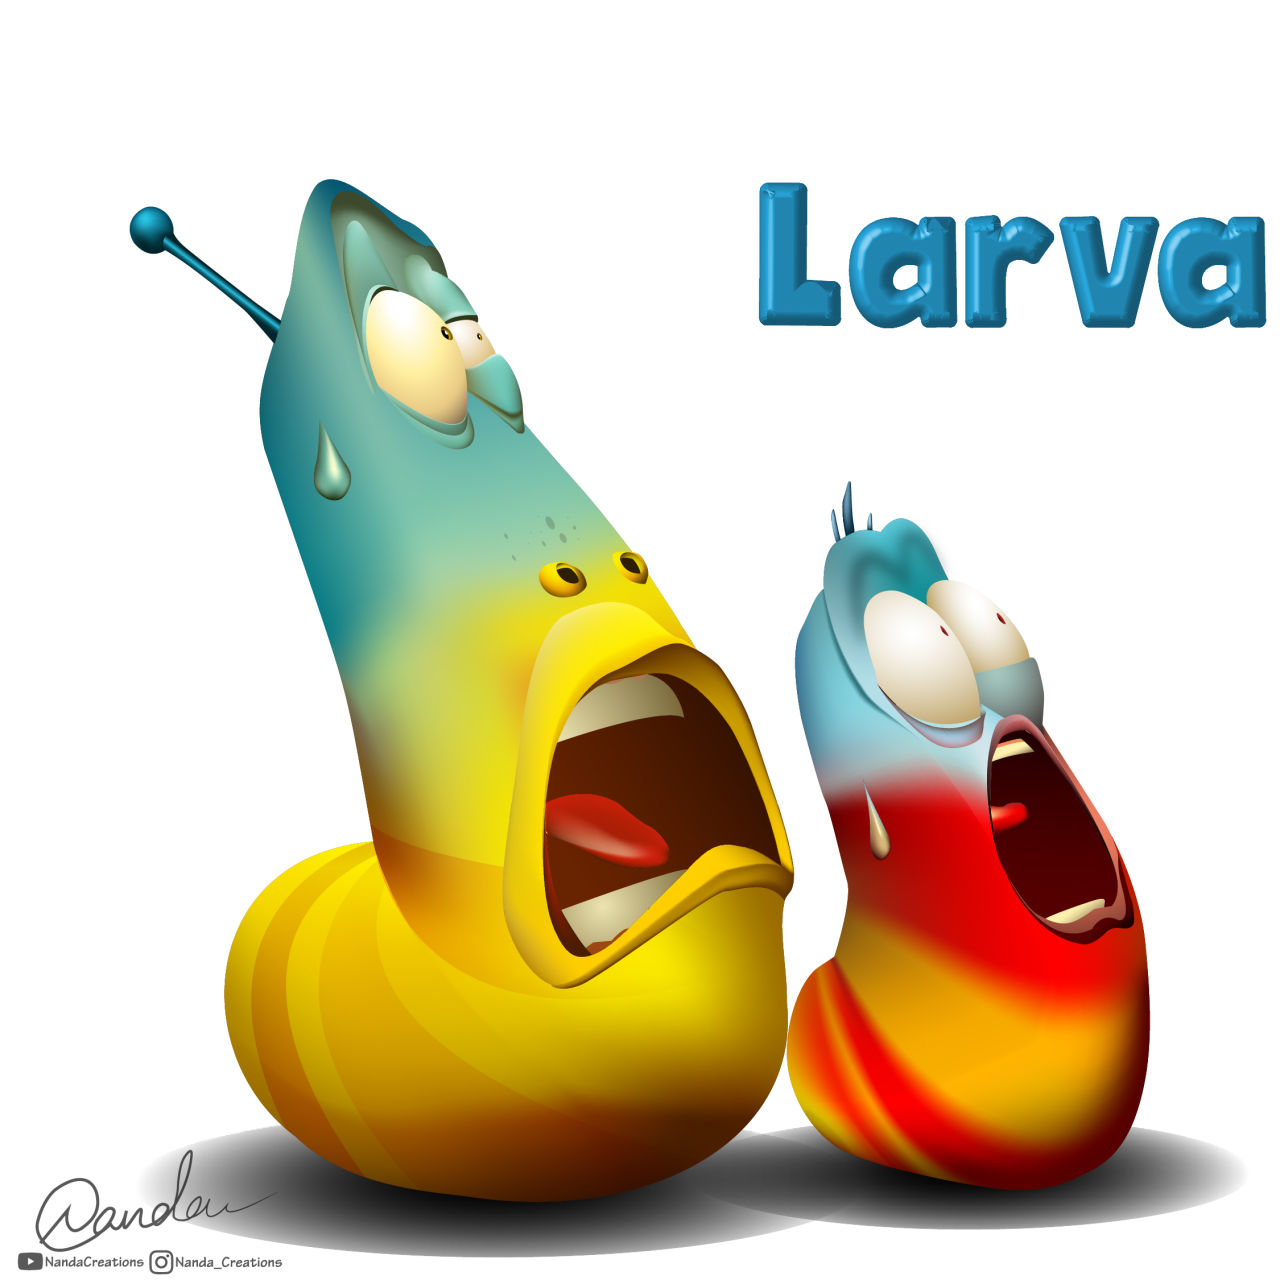 Larva cartoon character design in illustrator 2020 | Nanda Creations